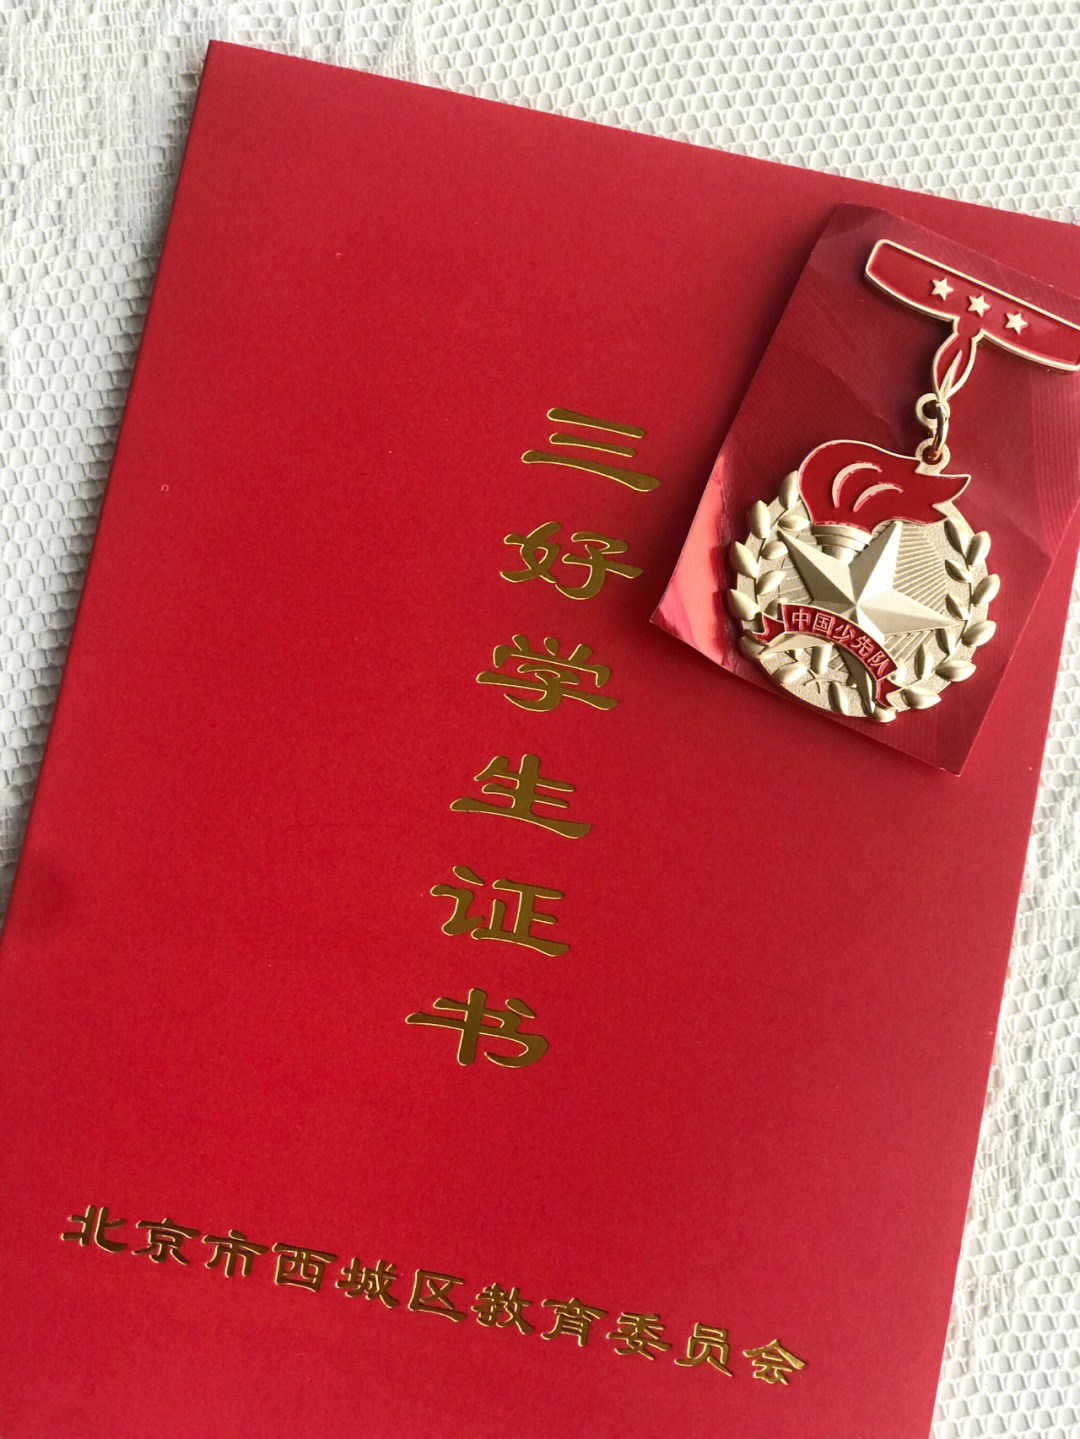 北京市红领巾奖章图片